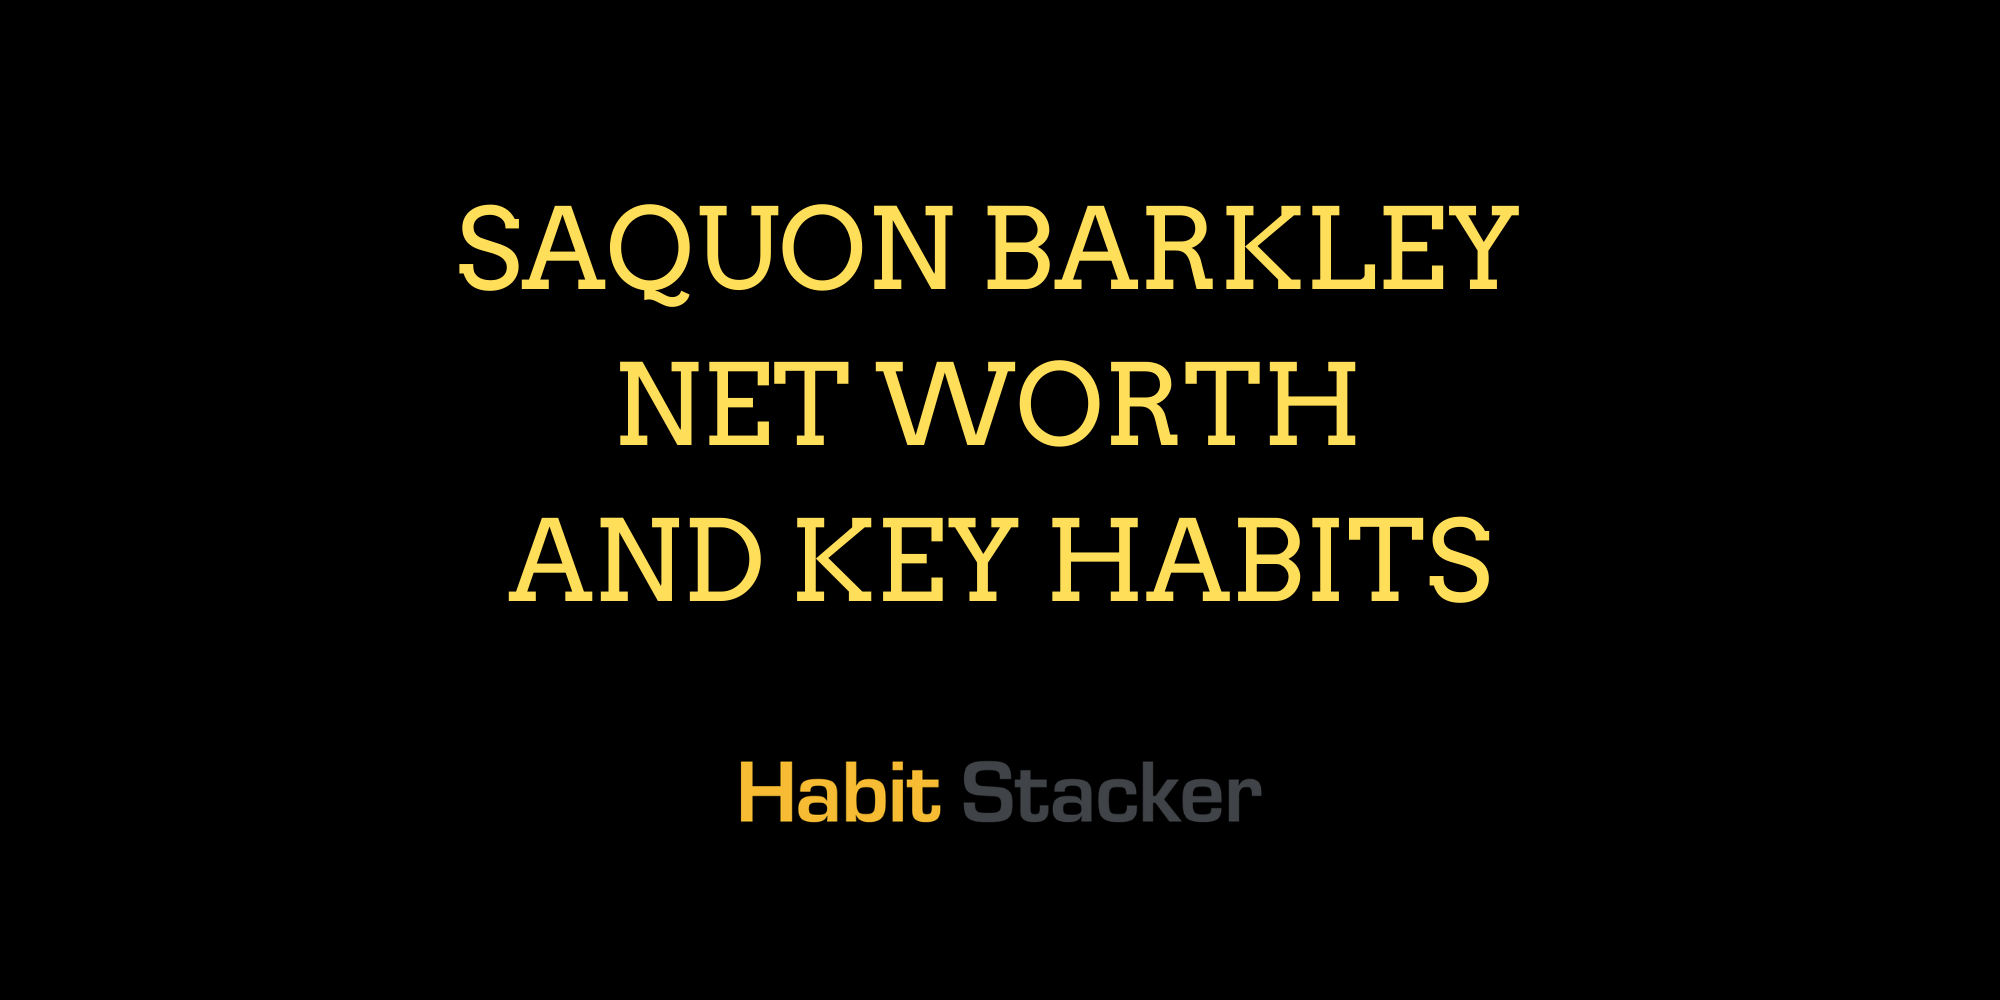 Saquon Barkley Net Worth And Key Habits